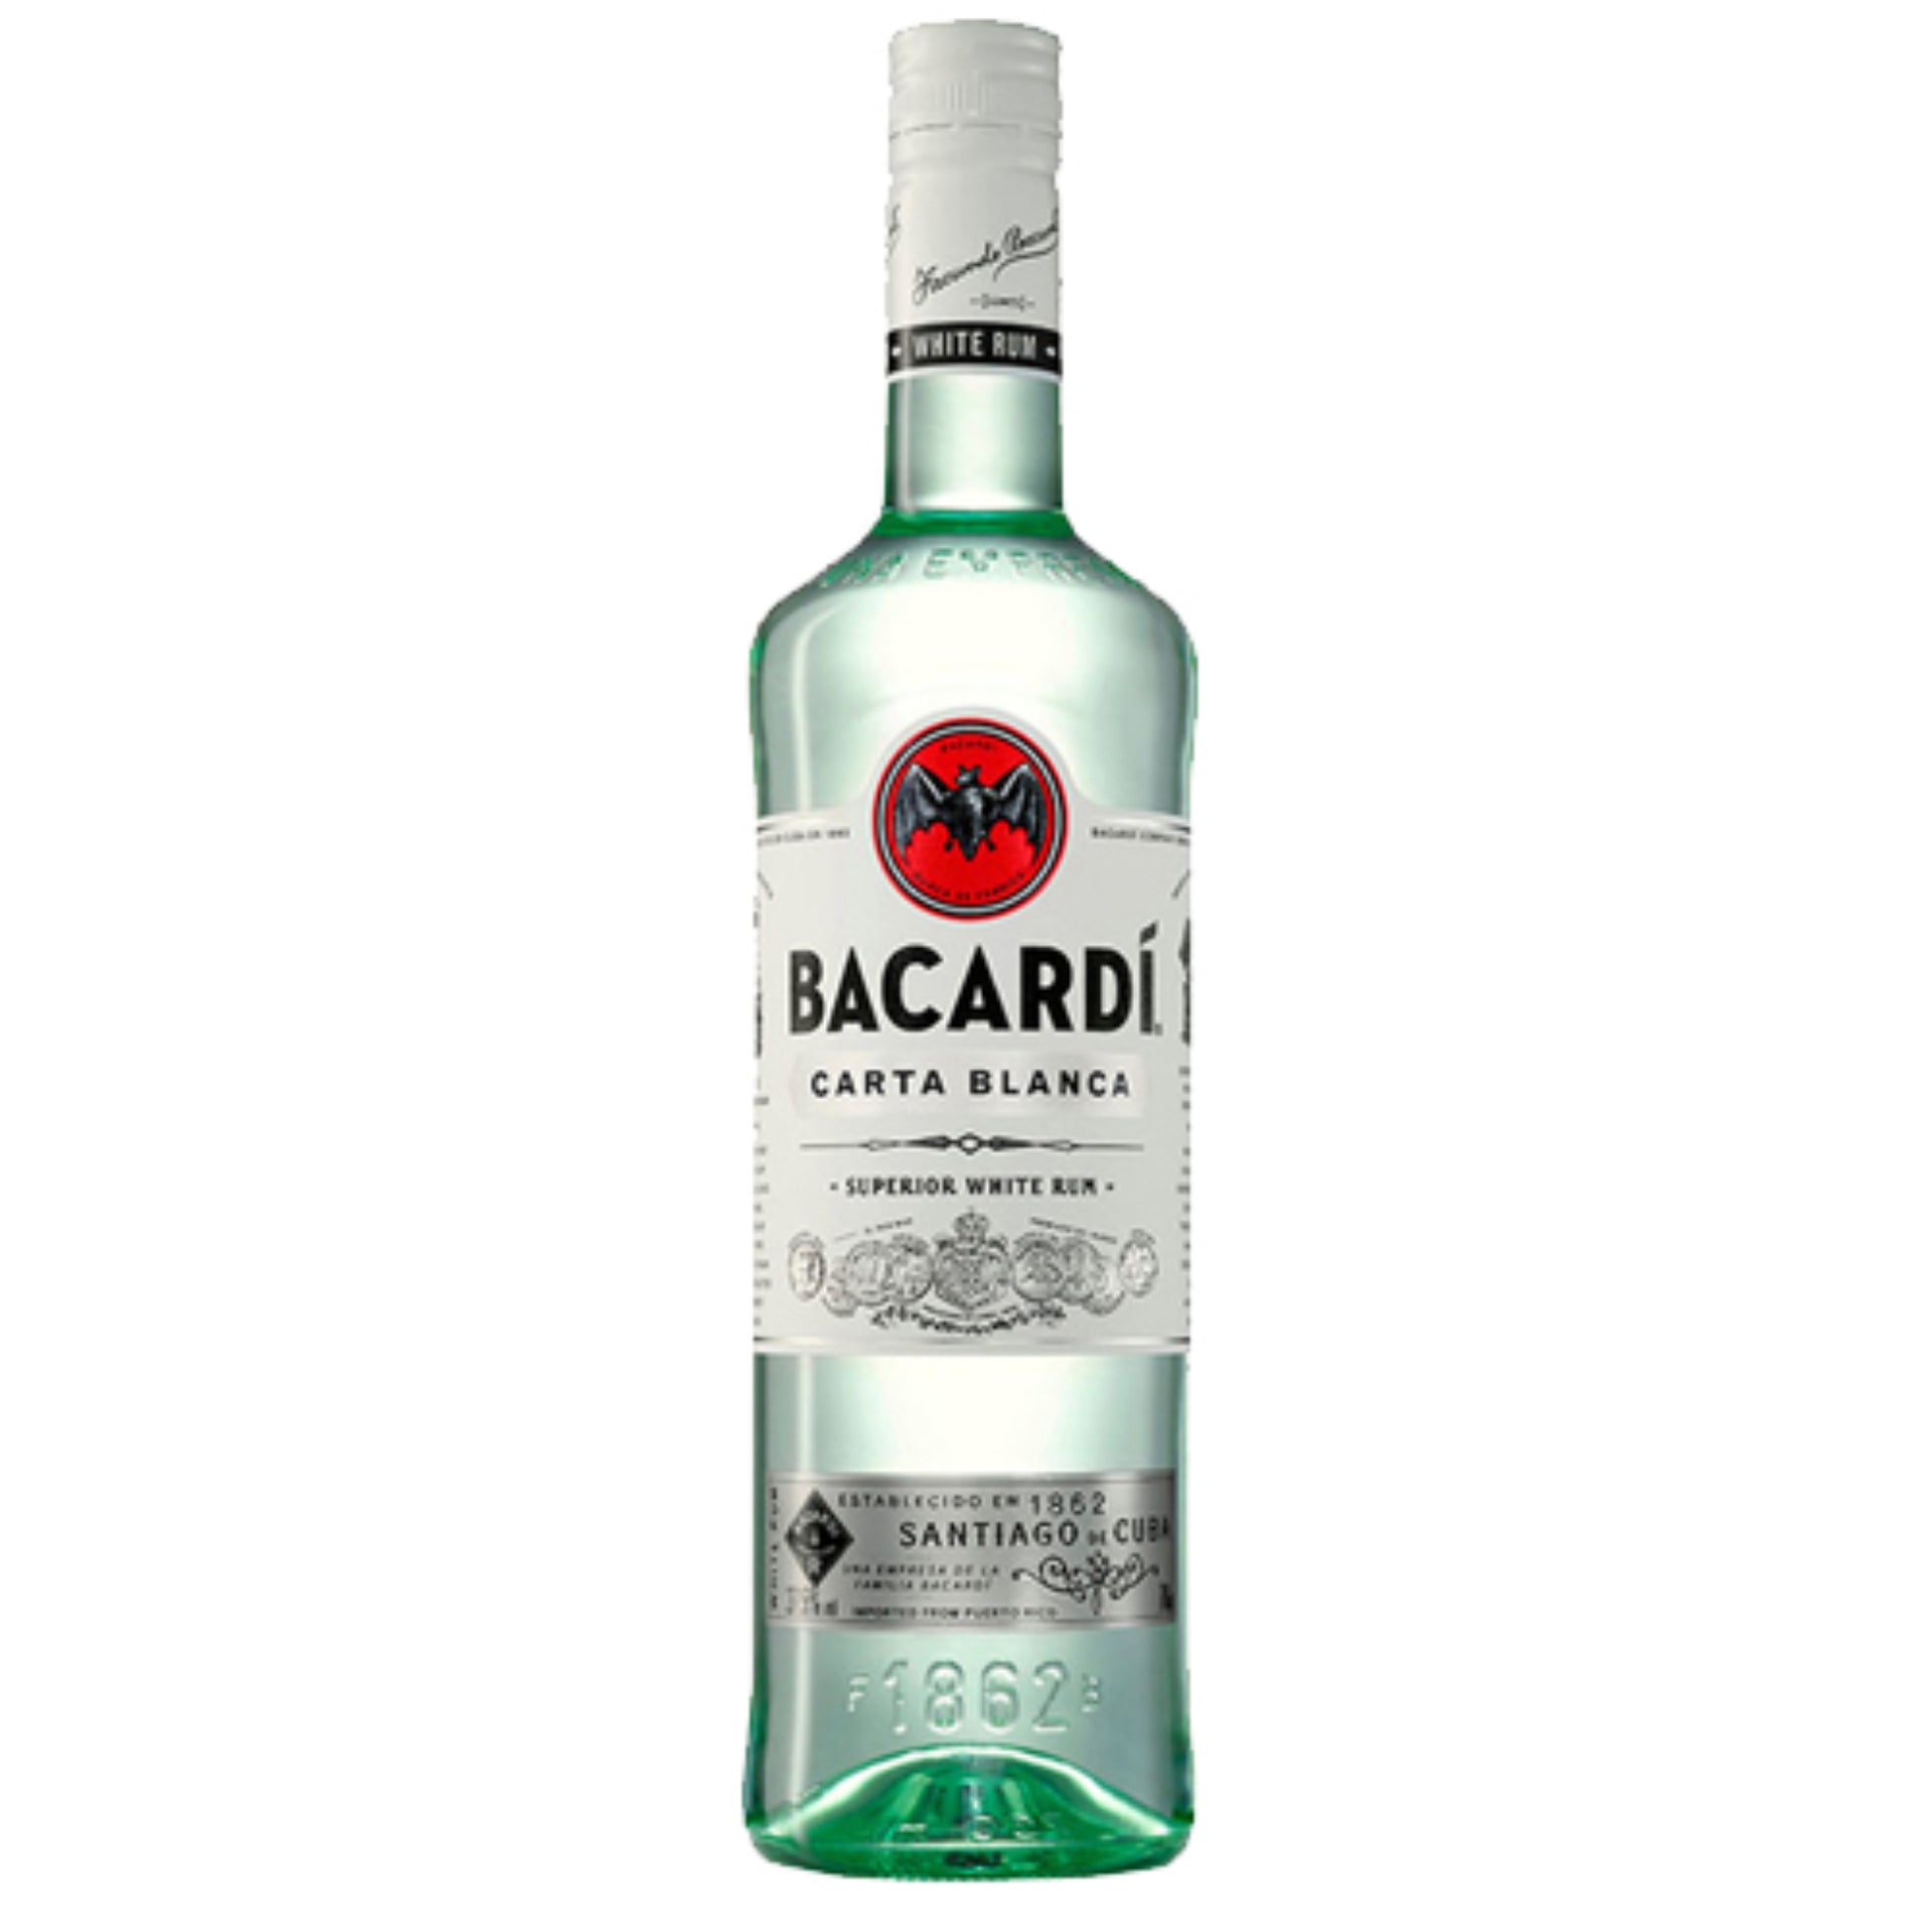 Bacardi Superior Rum - Liquor Geeks